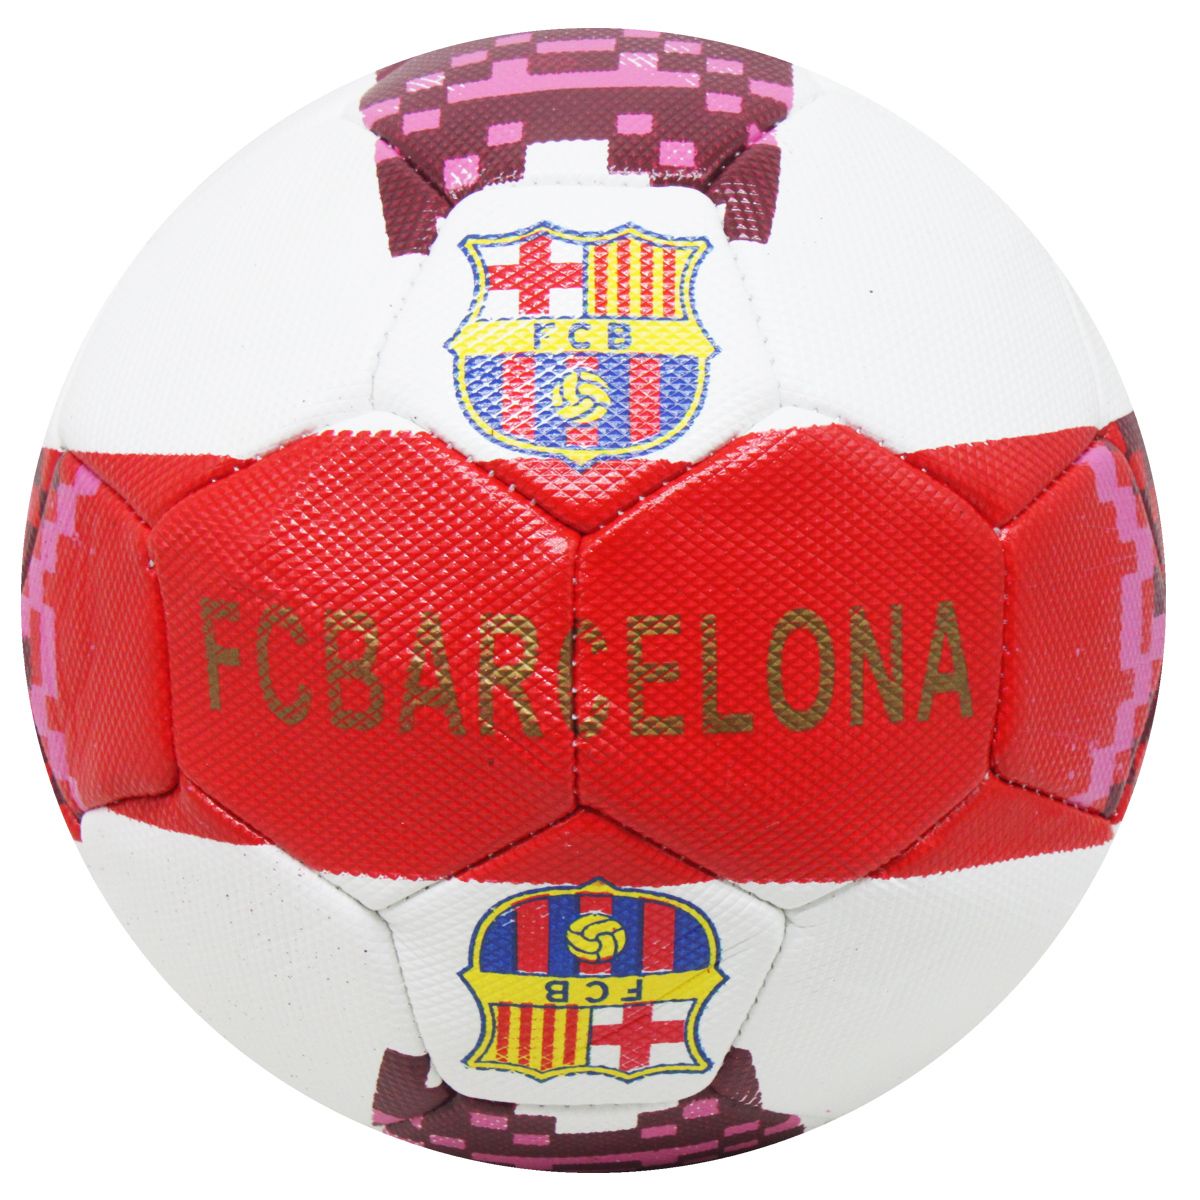 Мяч футбольный "Барселона" размер №5